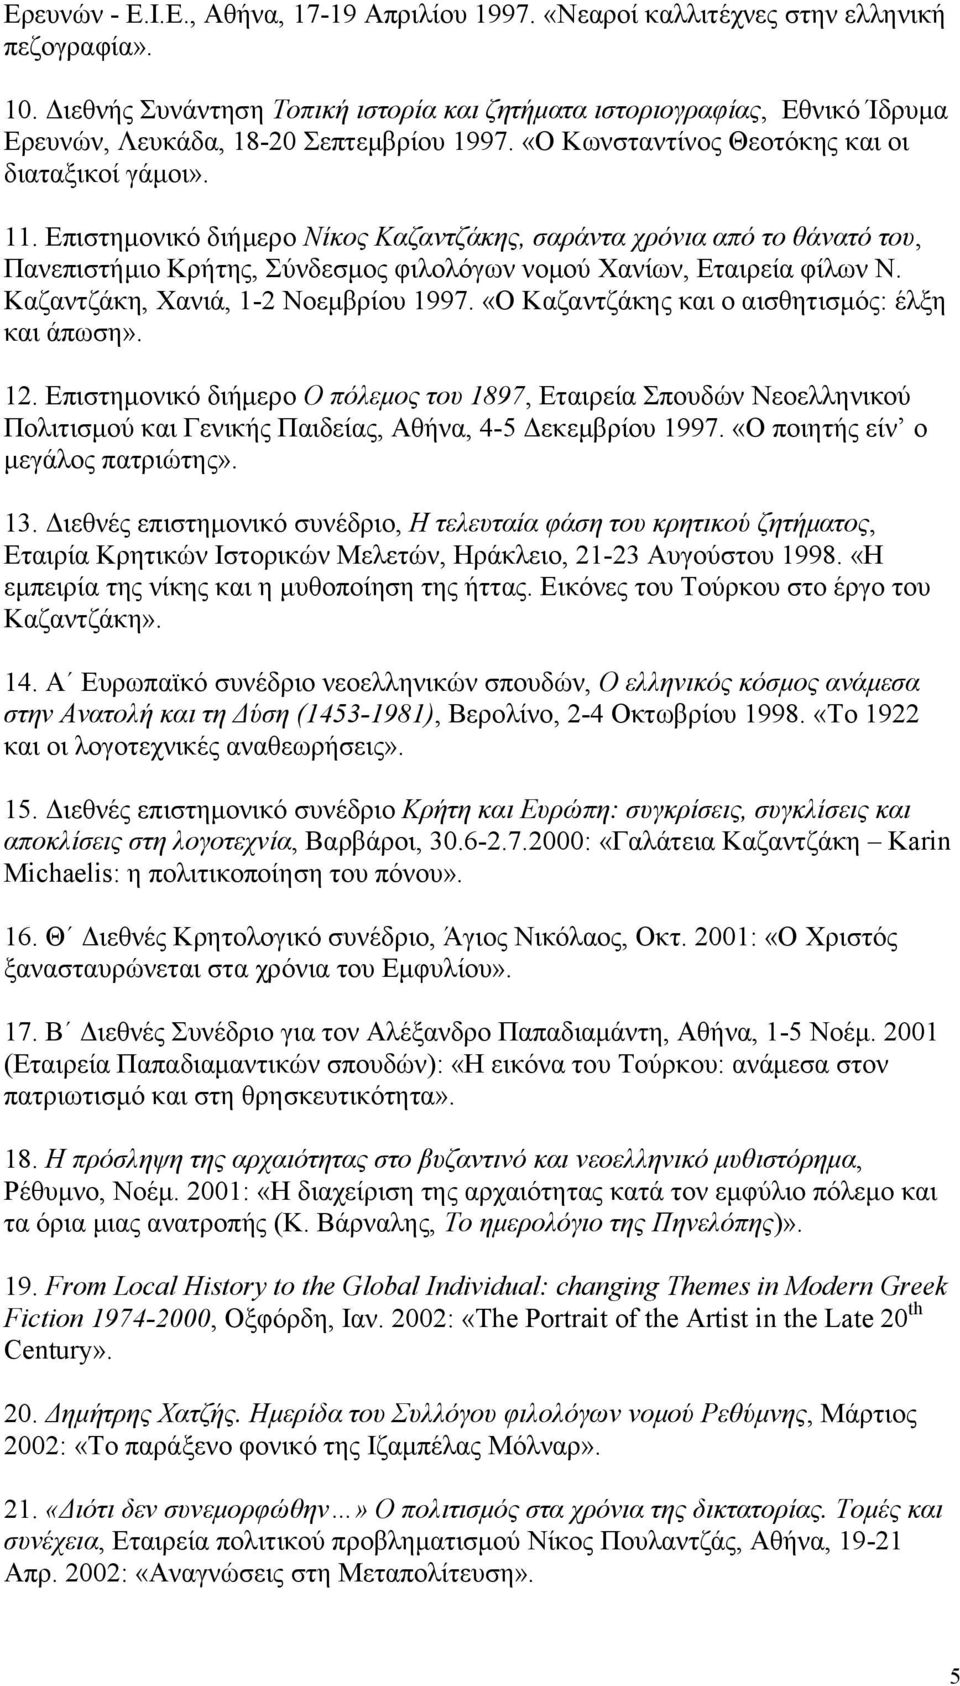 Επιστημονικό διήμερο Νίκος Καζαντζάκης, σαράντα χρόνια από το θάνατό του, Πανεπιστήμιο Κρήτης, Σύνδεσμος φιλολόγων νομού Χανίων, Εταιρεία φίλων Ν. Καζαντζάκη, Χανιά, 1-2 Νοεμβρίου 1997.